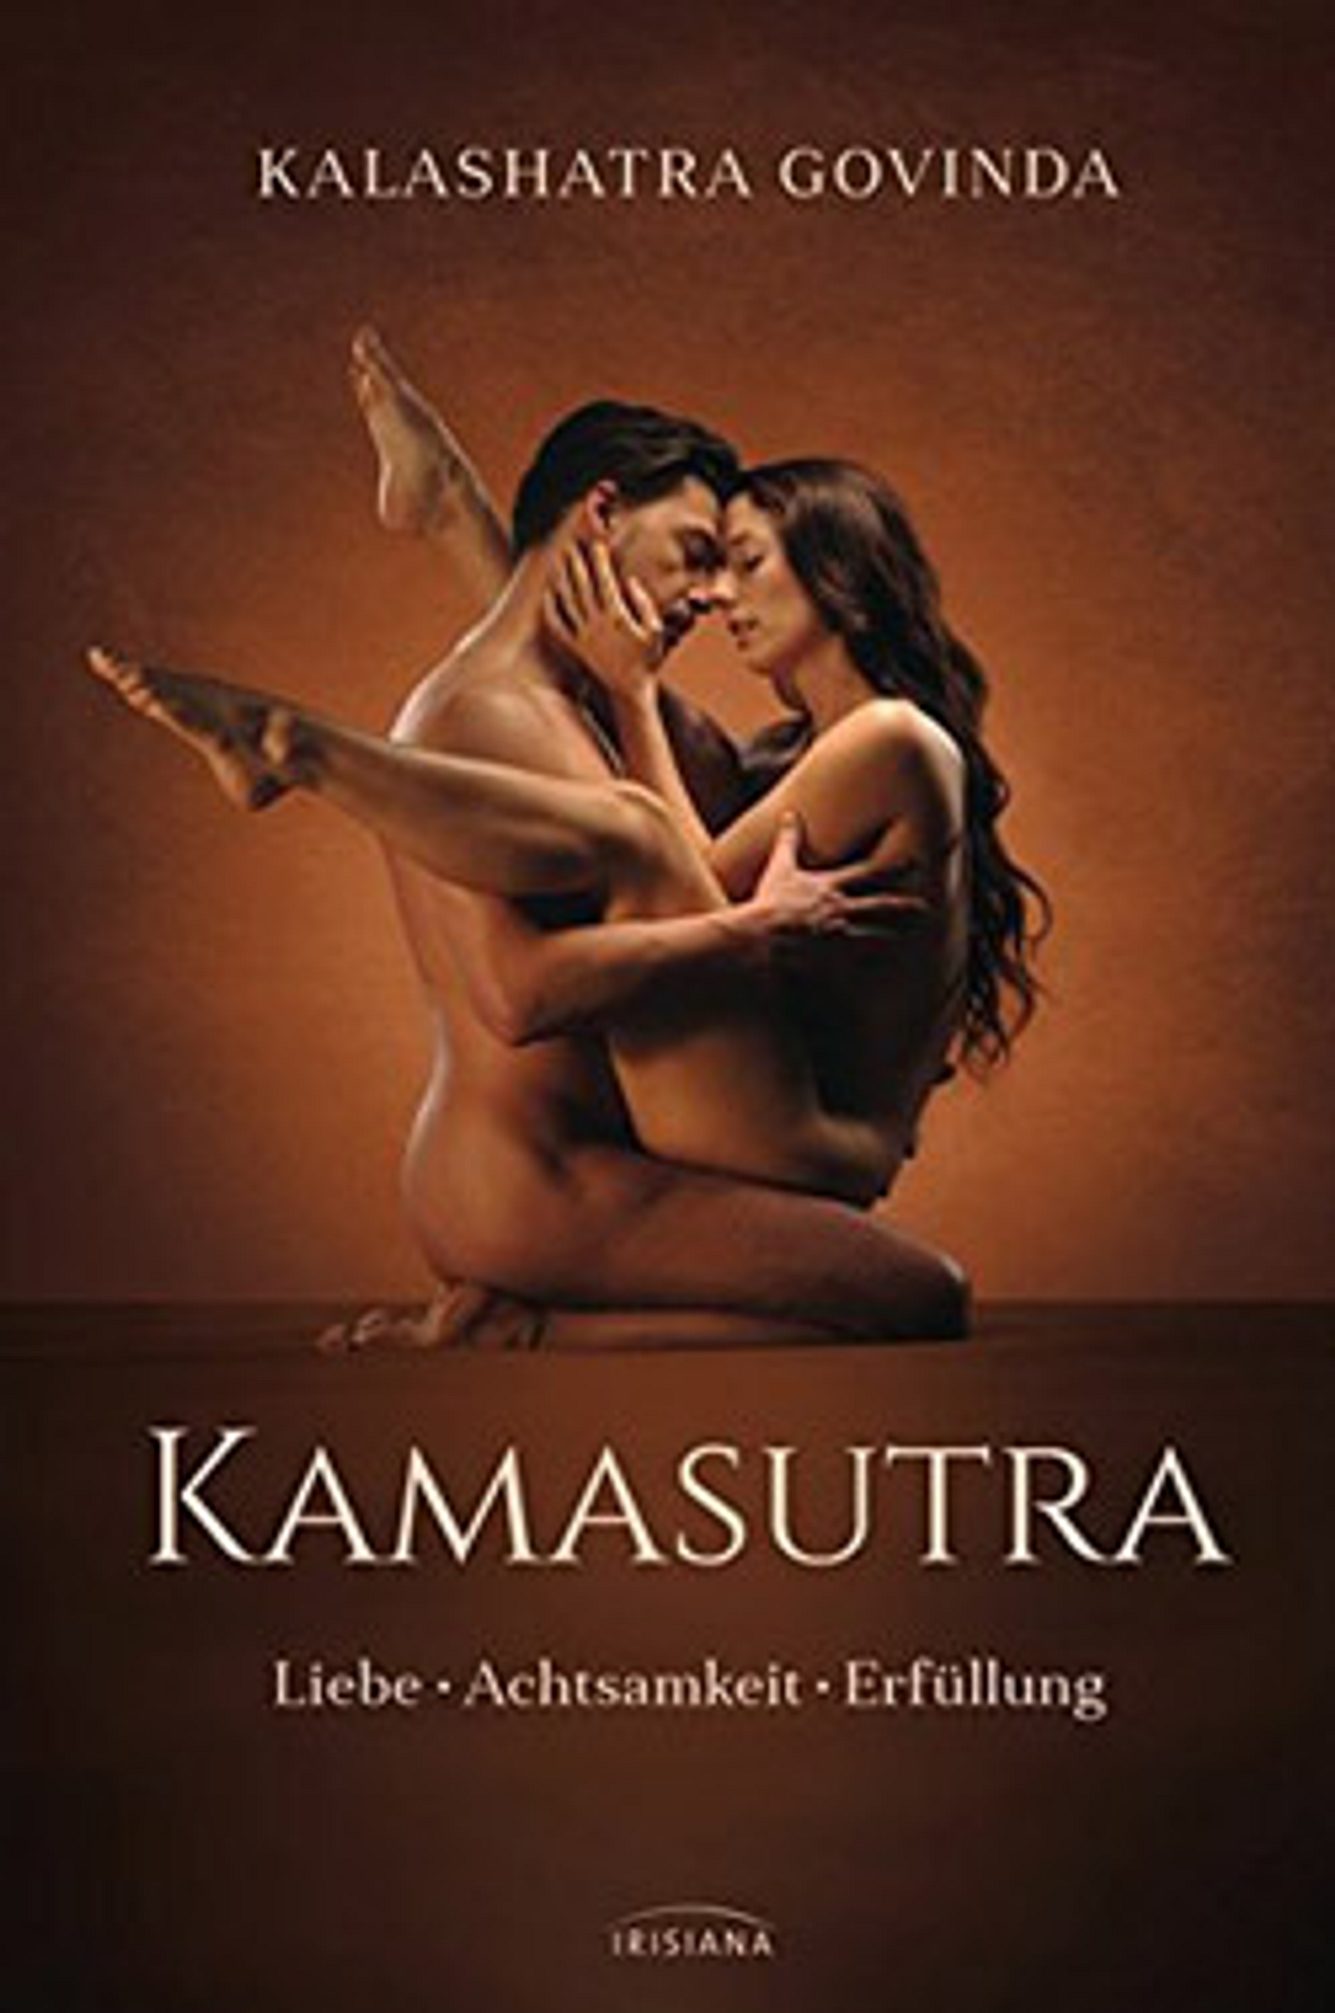 Die besten Kamasutra-Bücher